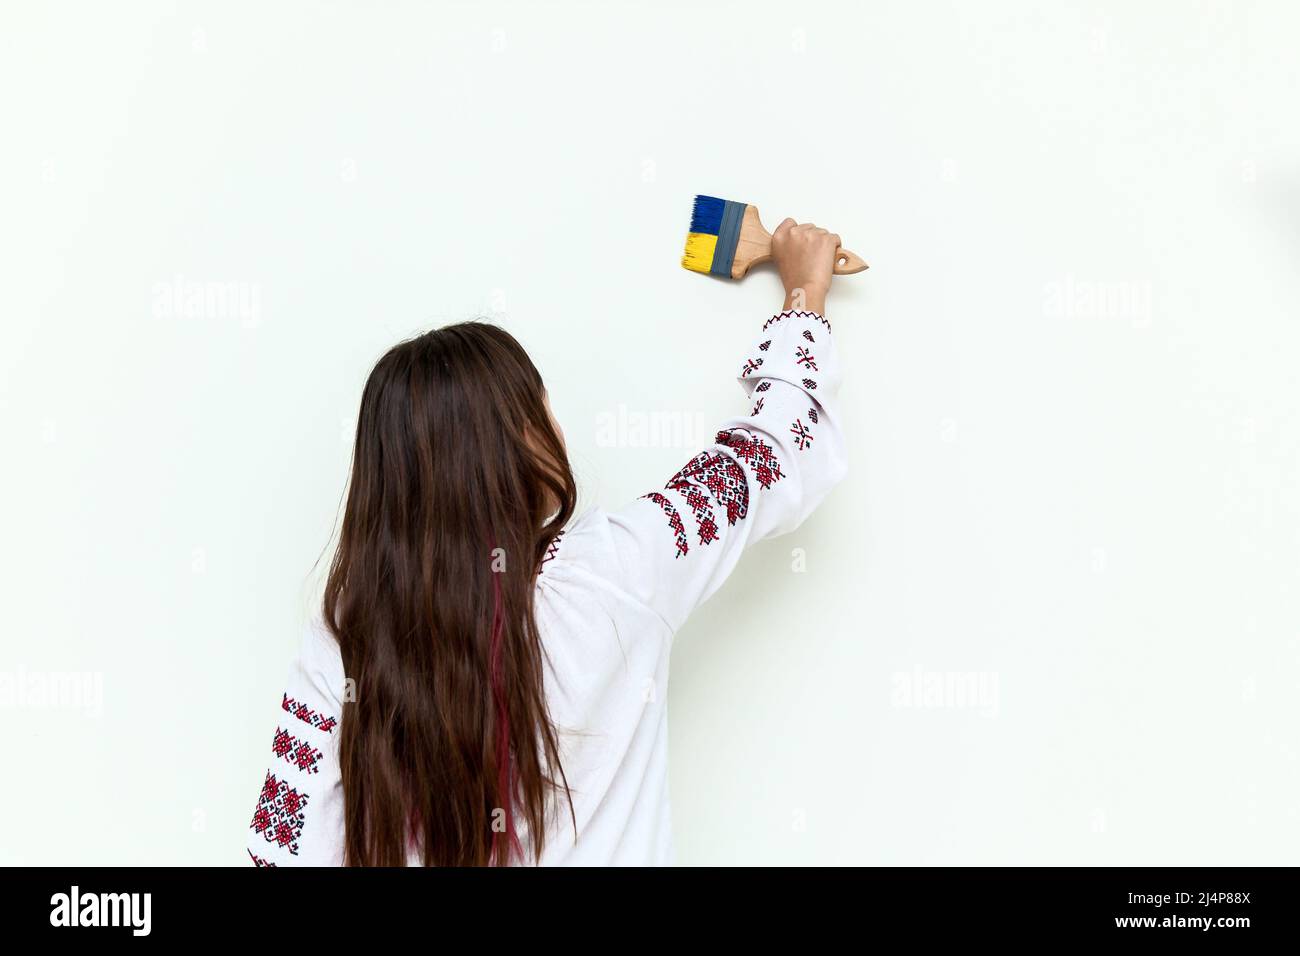 Una chica en un vestido con bordado dibuja en una pared blanca, sostiene un pincel pintado en azul y amarillo. La chica protesta contra la guerra y dibuja la fla Foto de stock